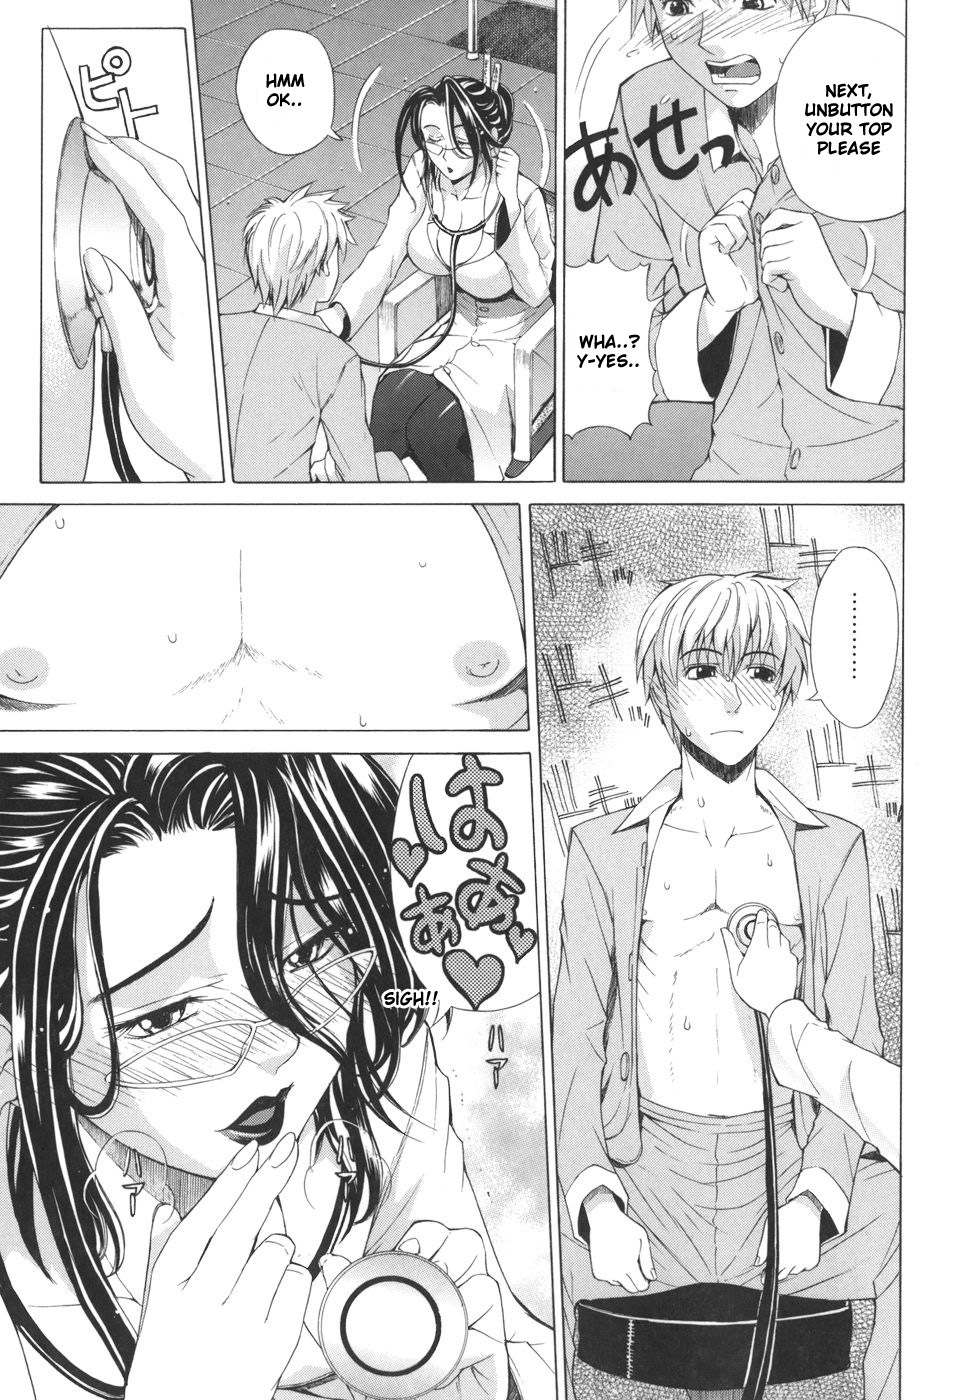 Pearl Rose 56 hentai manga